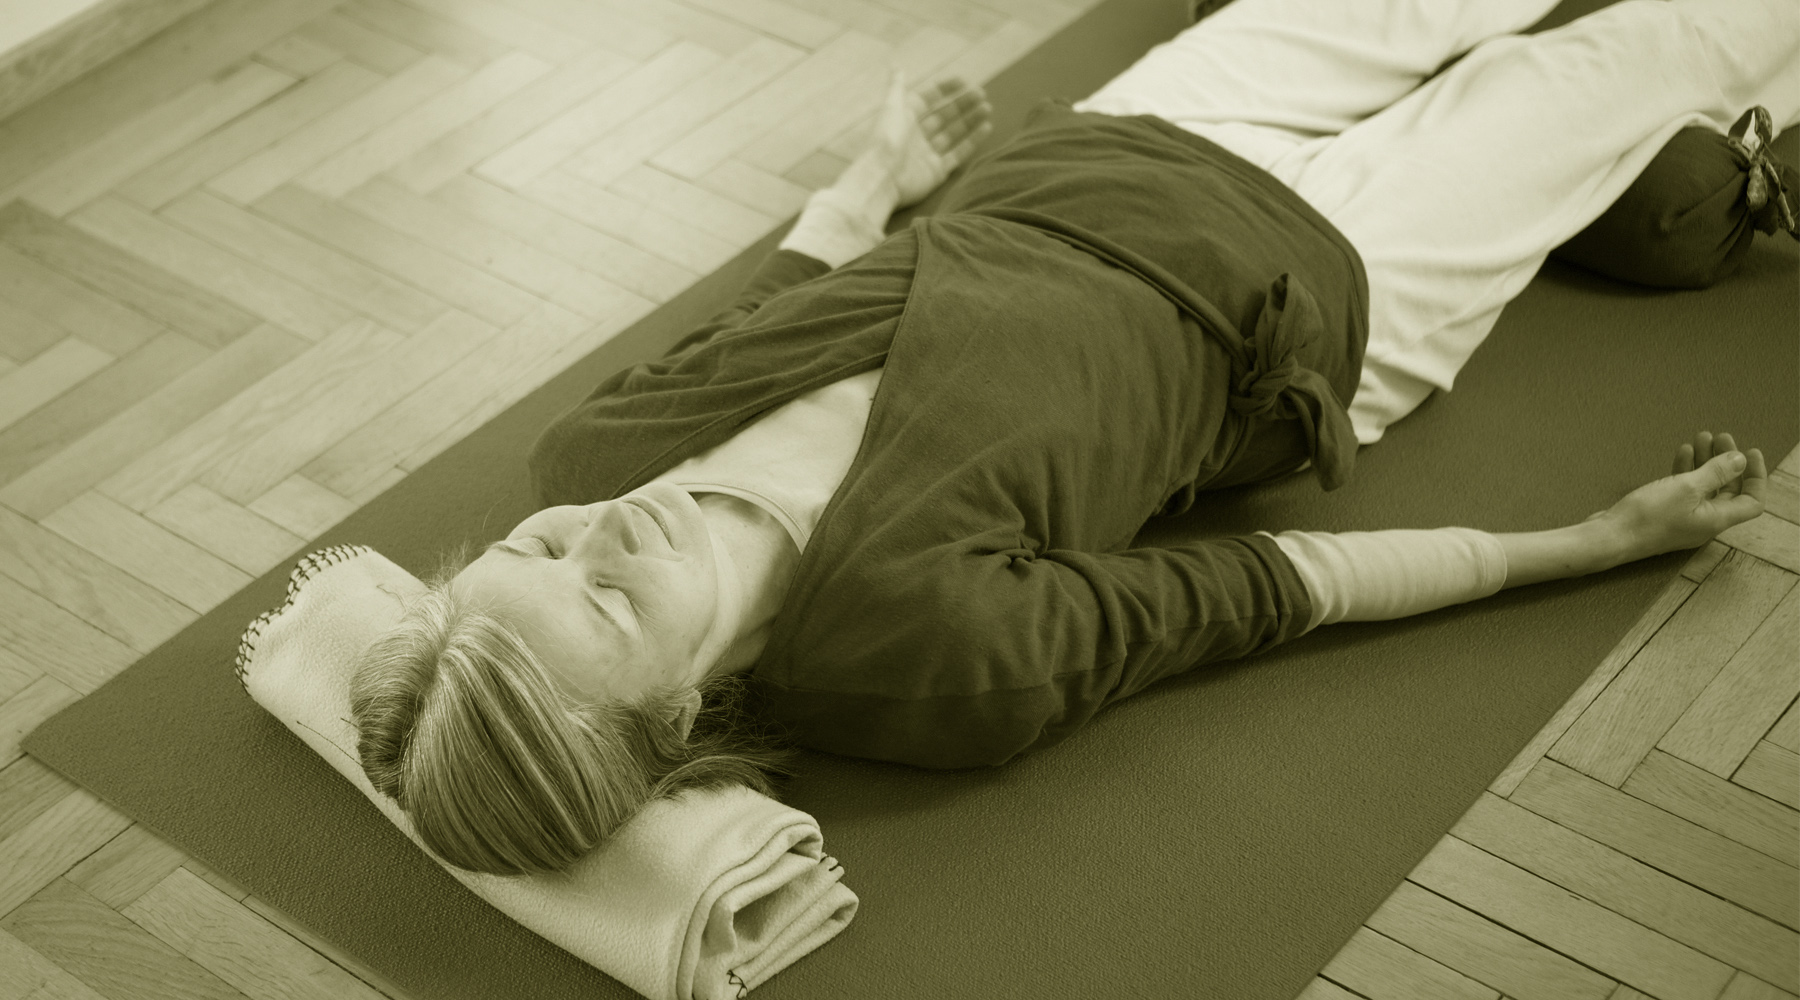 Entspannung als integraler Teil von Yoga